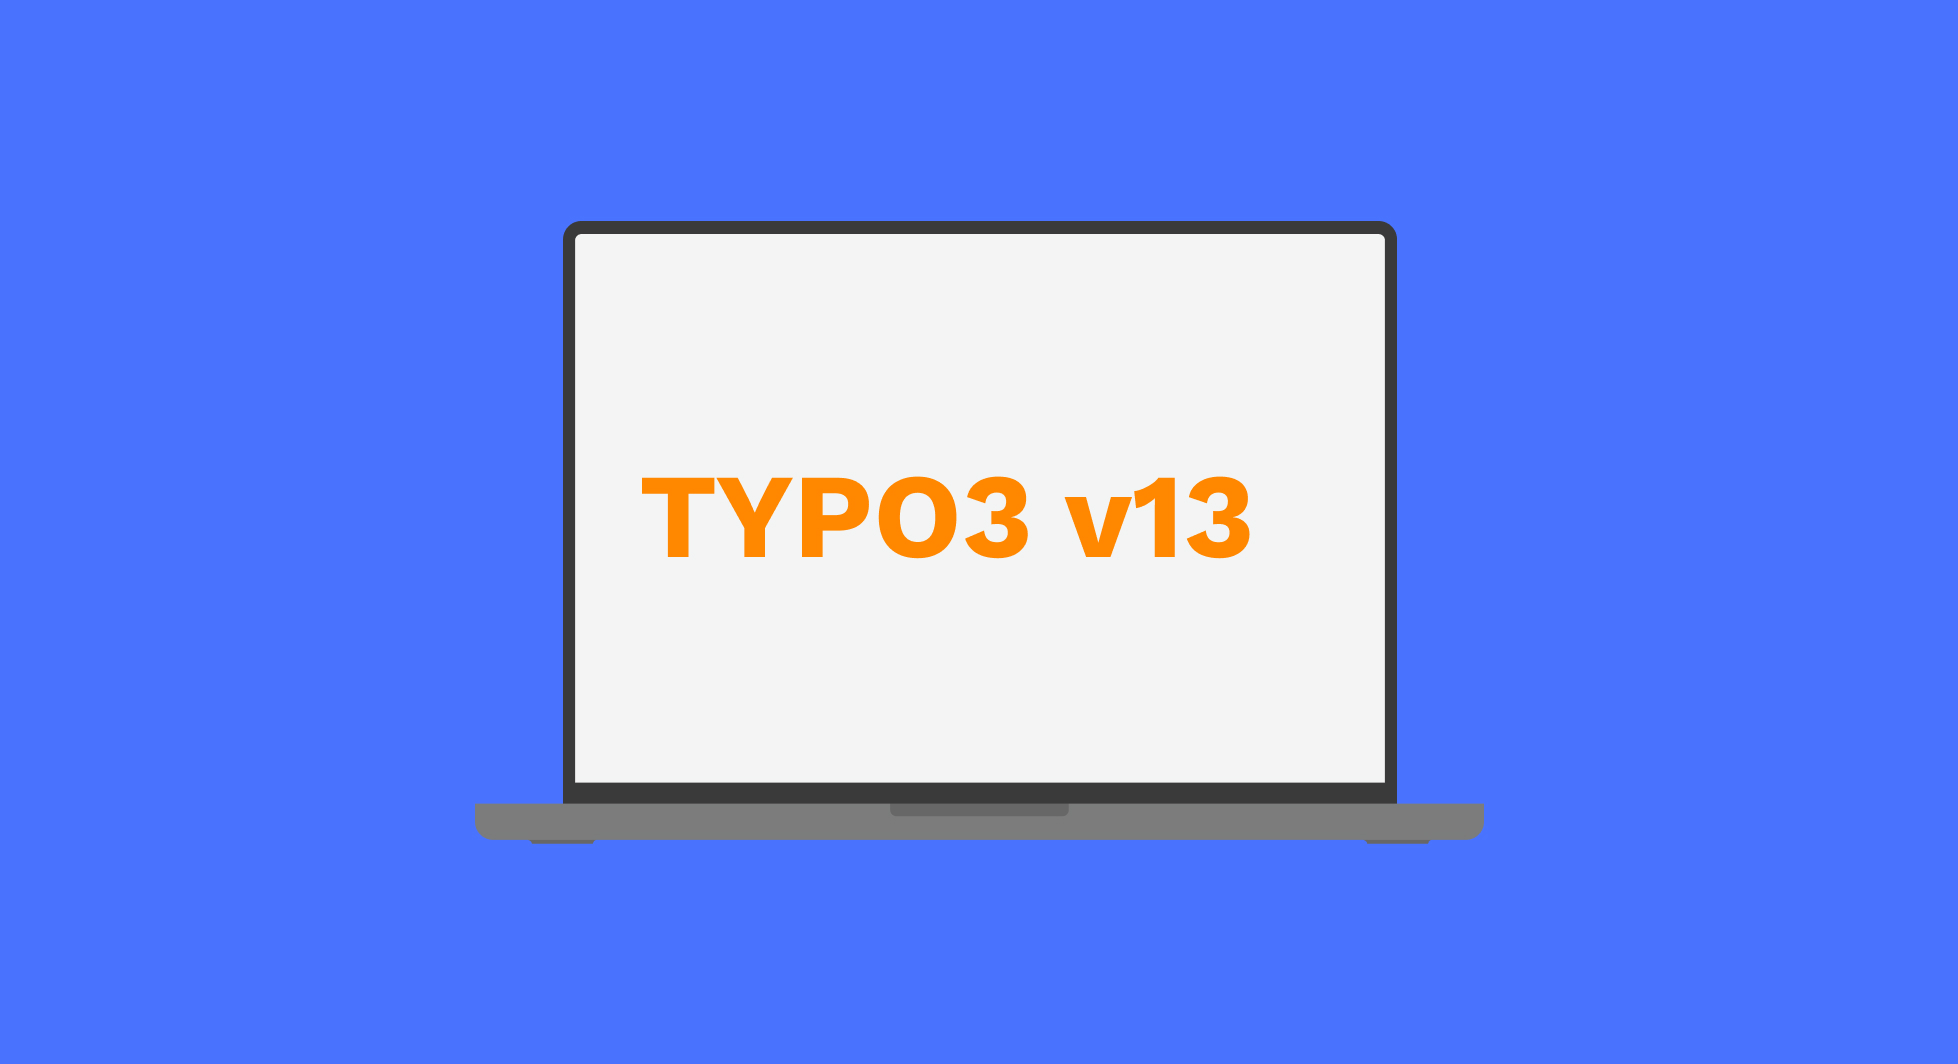 Bestens vorbereitet auf das TYPO3 v13 Upgrade